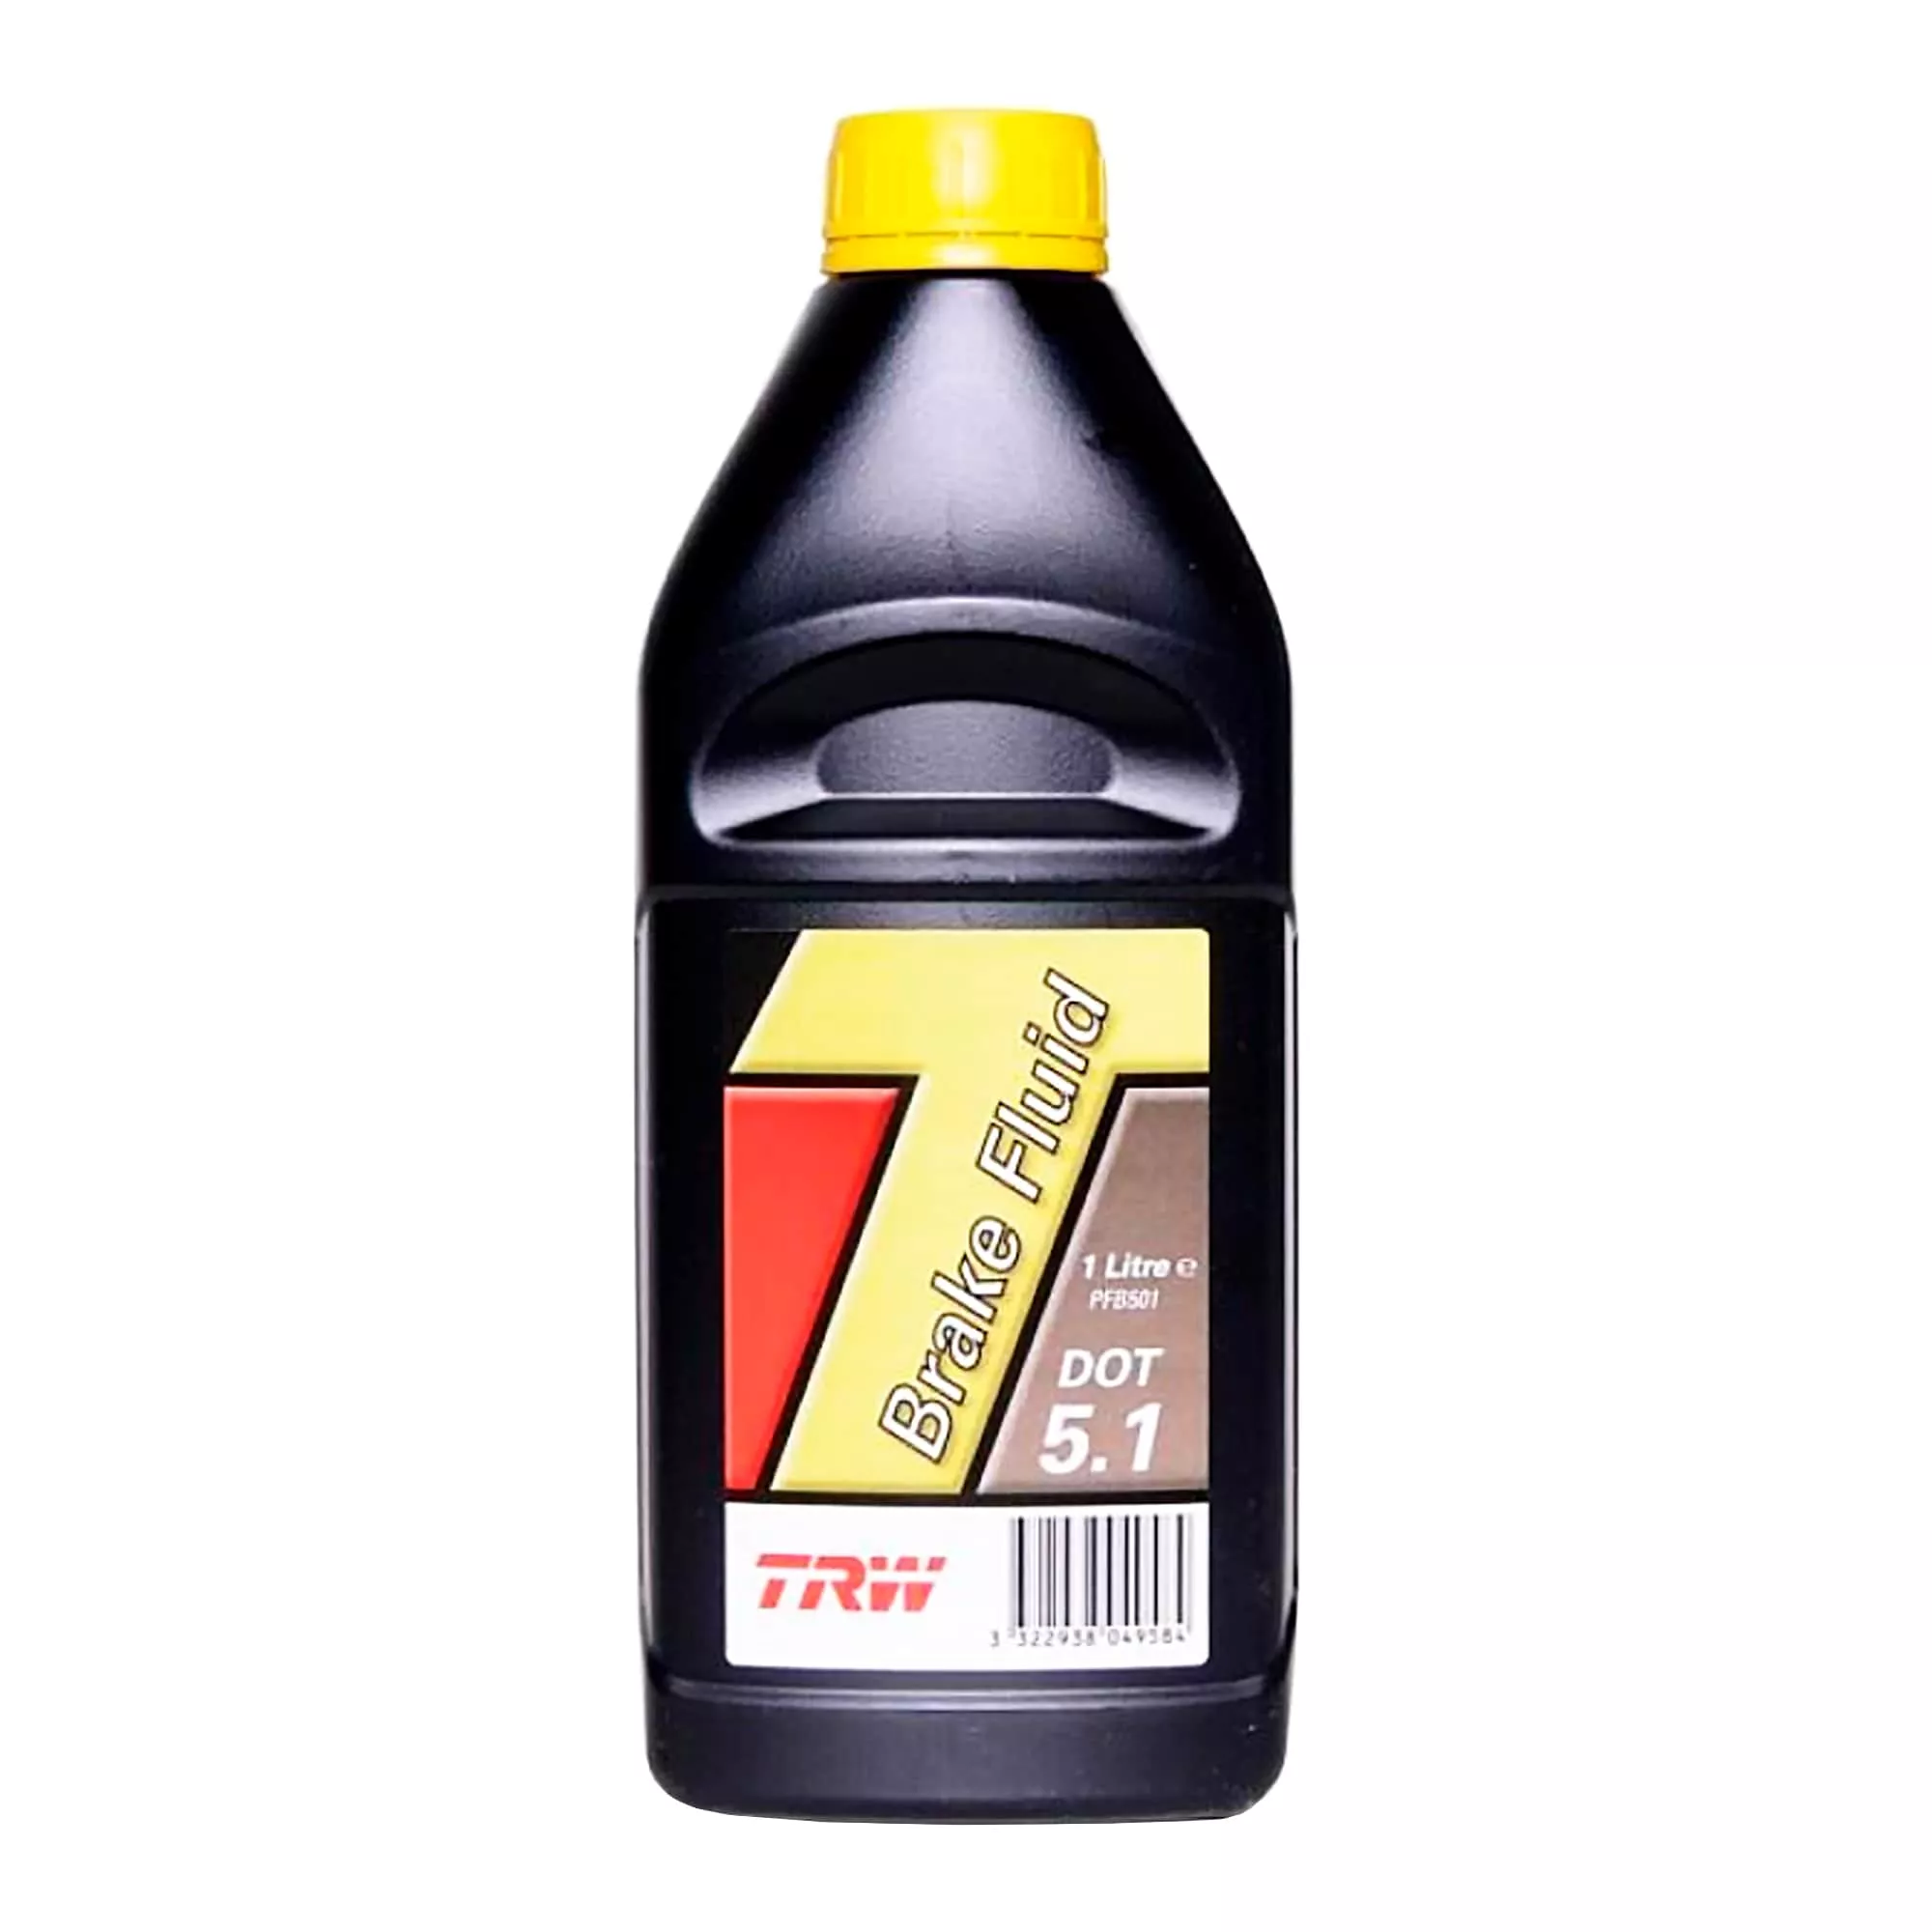 Тормозная жидкость TRW DOT 5.1 ESP 1л (PFB701)